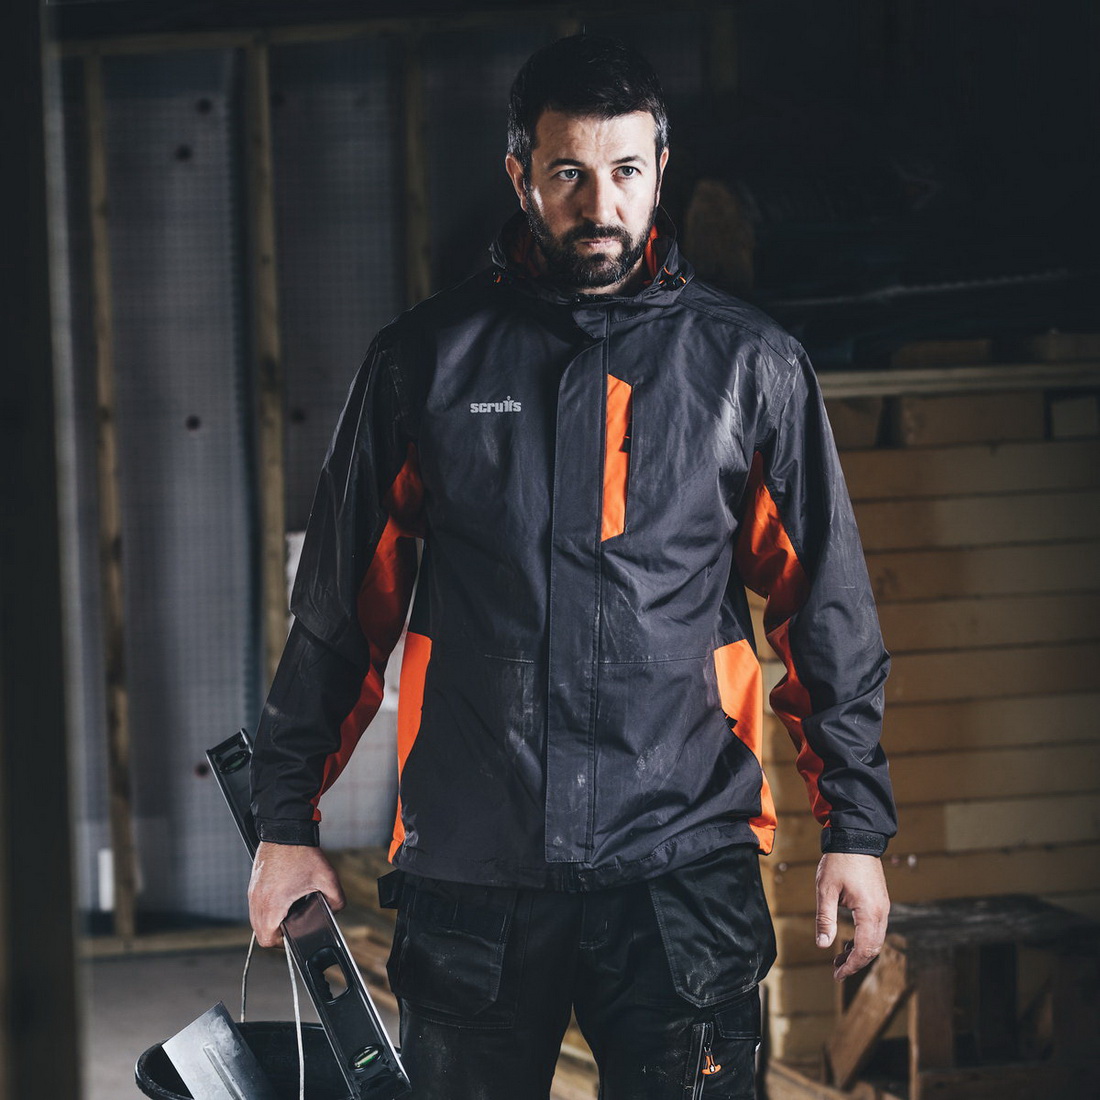 Waterproof Worker Jacket X-Large Grey/Orange T54041 | Wet Weather Gear ...